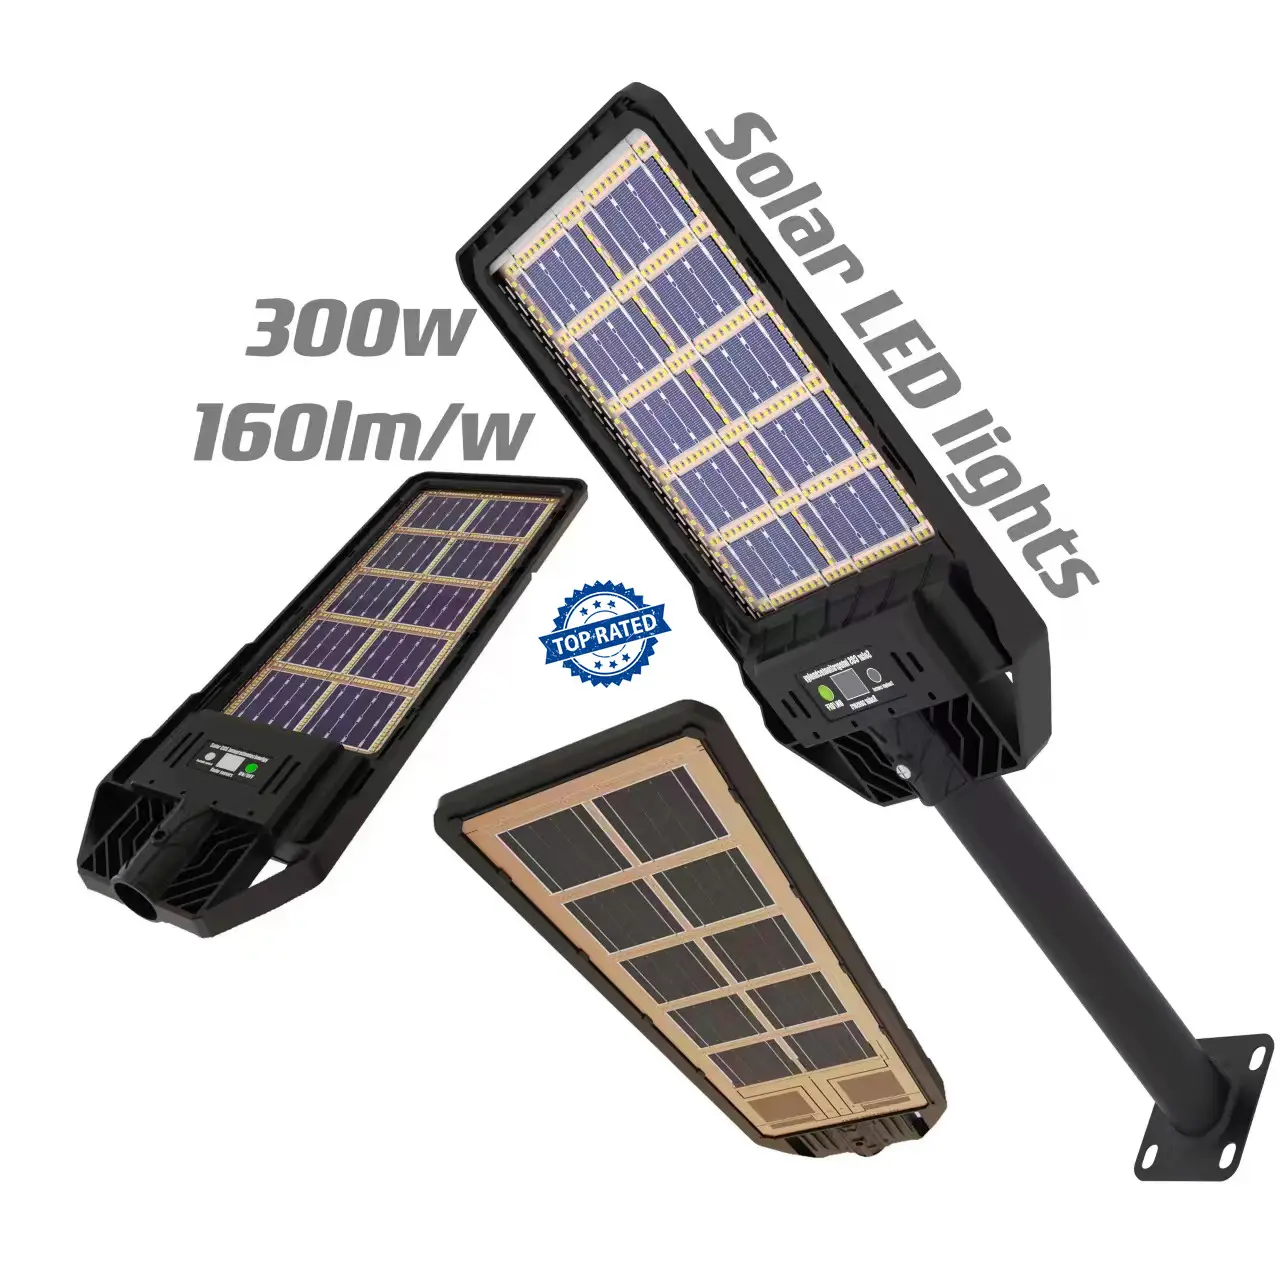 100W 200W 300W 400W Ip65 all'aperto tutto In uno lampione solare 200w luci solari all'aperto impermeabili